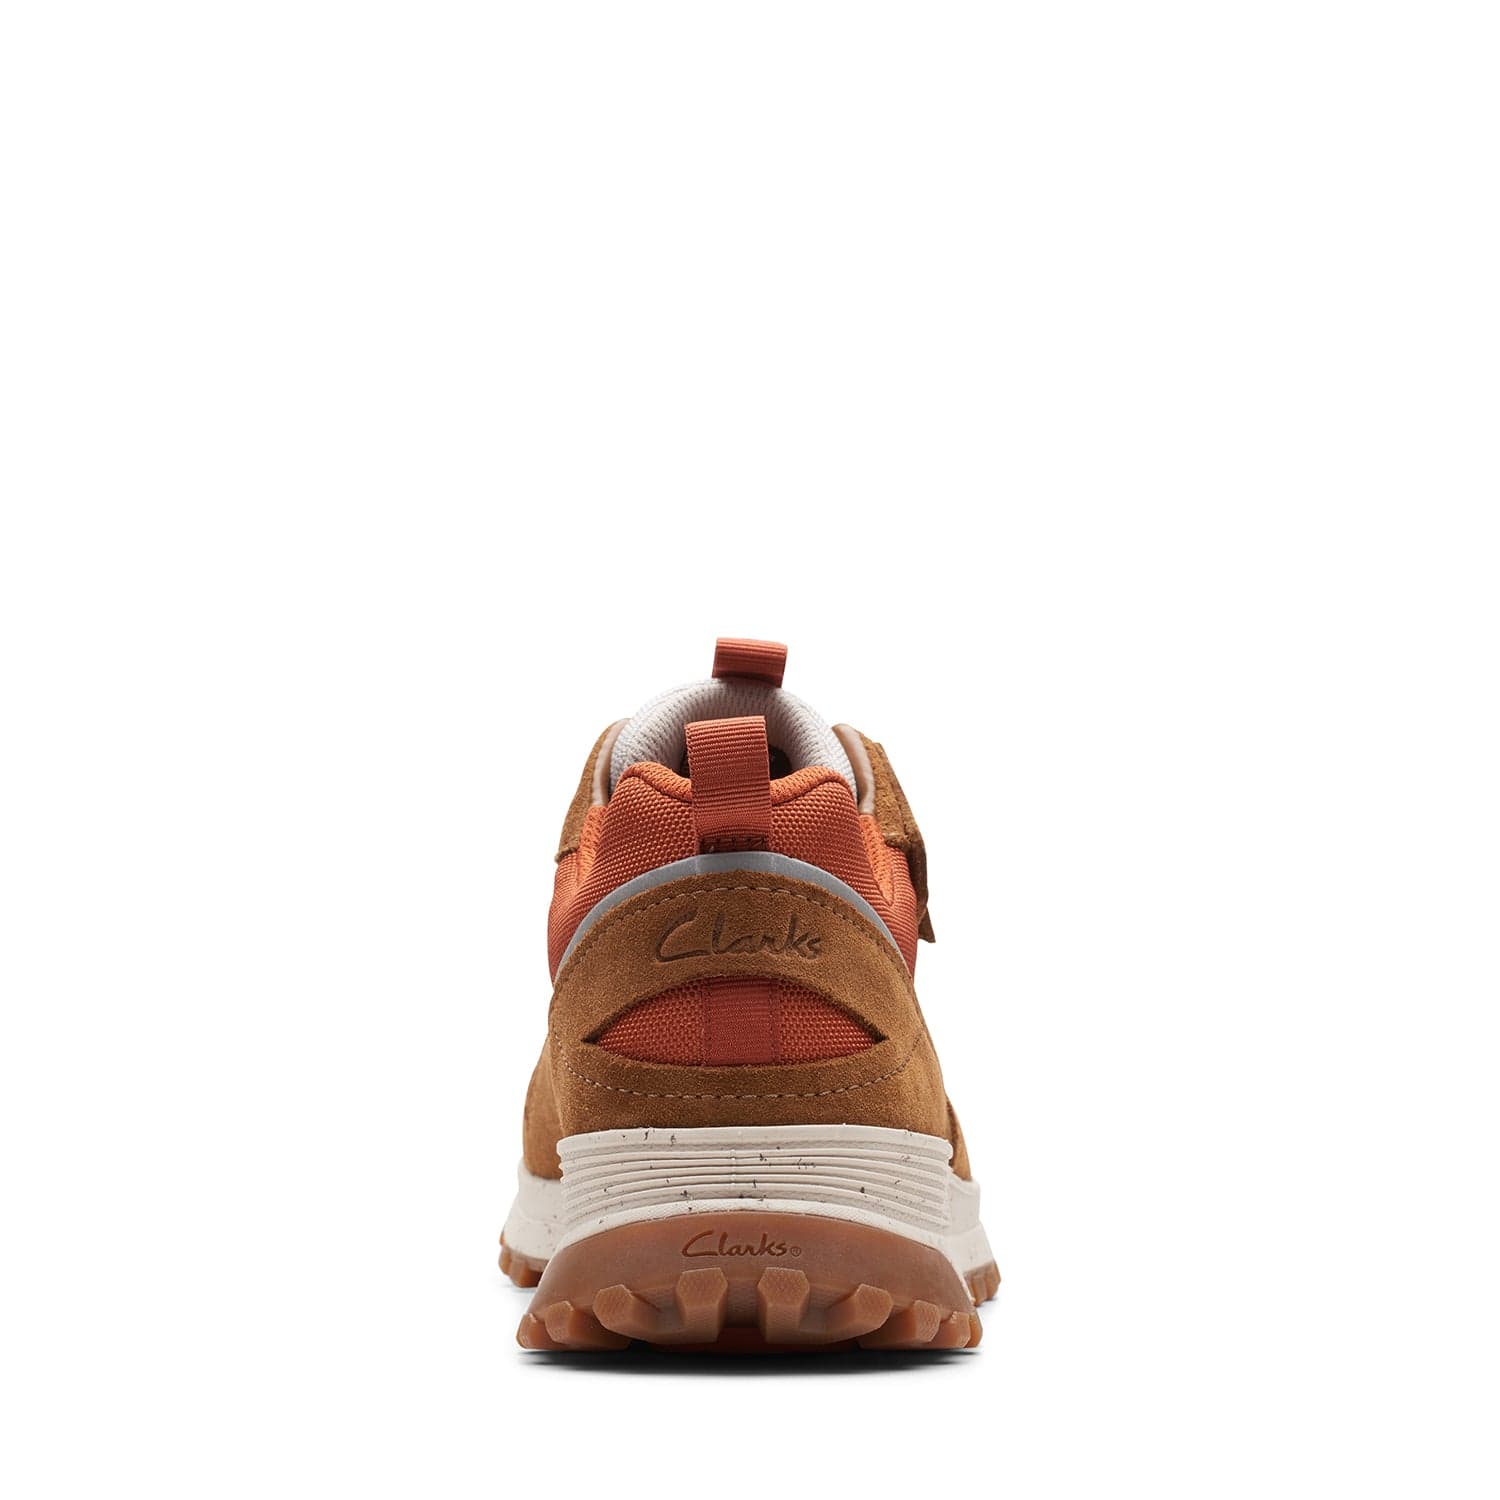 Clarks Atltrekwalkwp - Shoes - Cognac Combi - 261657367 - G Width (Standard Fit)